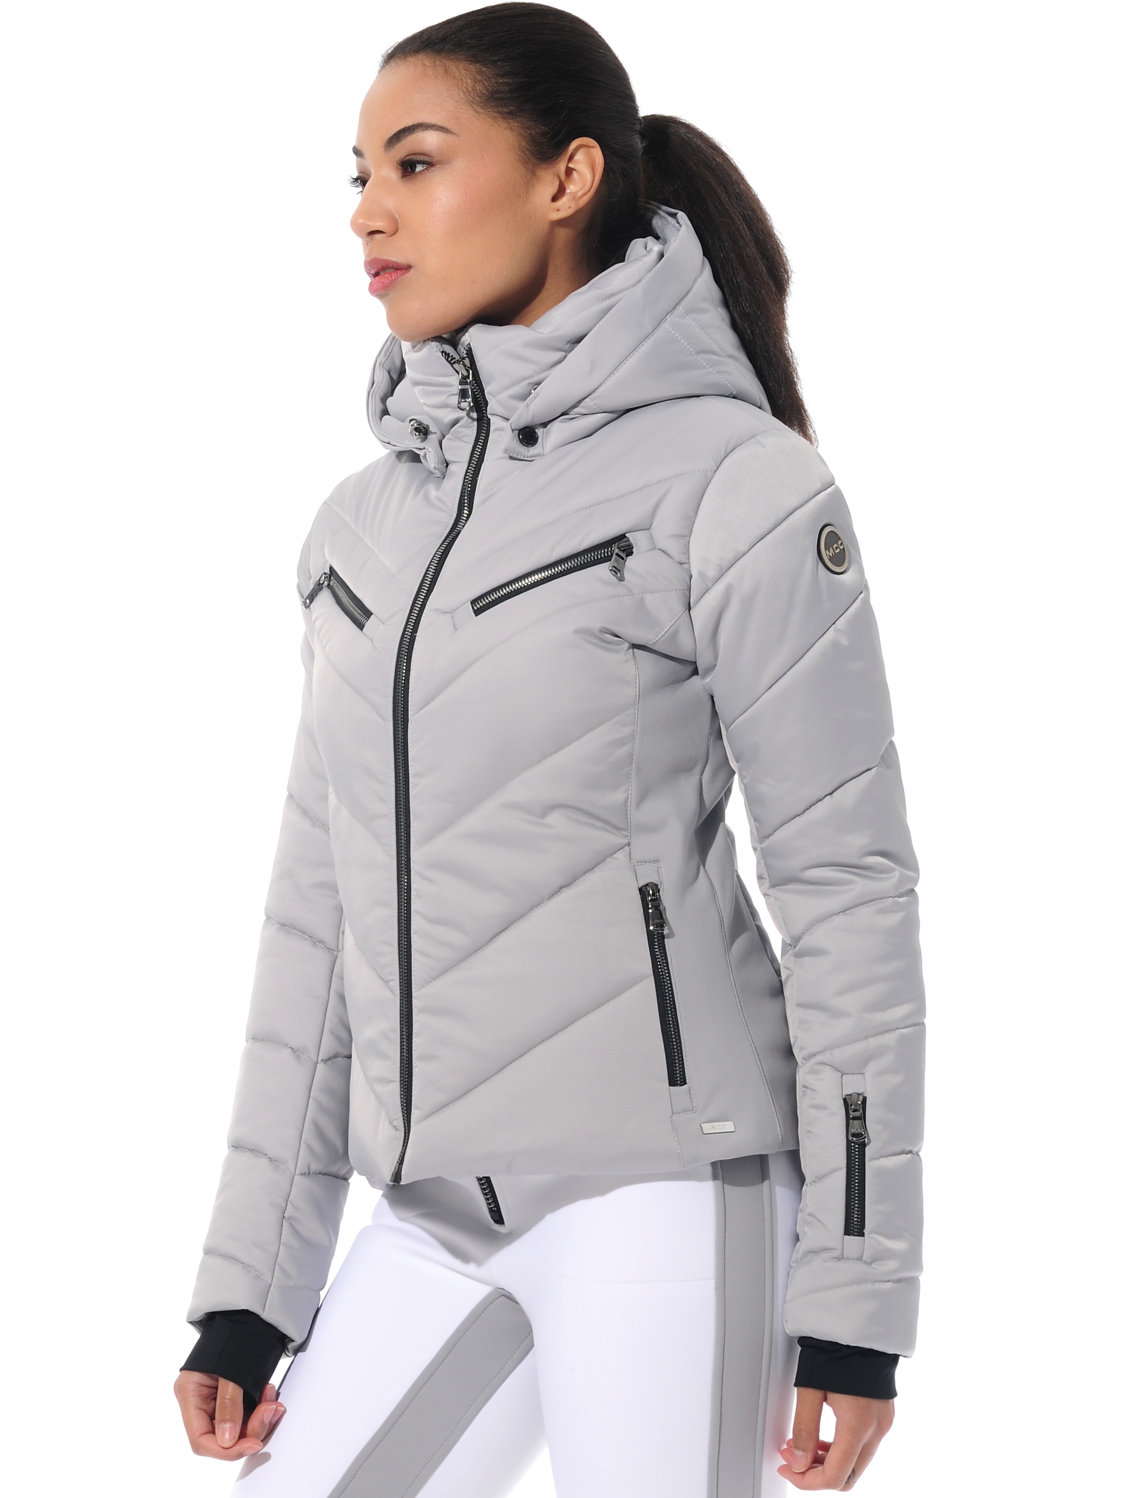 stretch ski jacket grey 